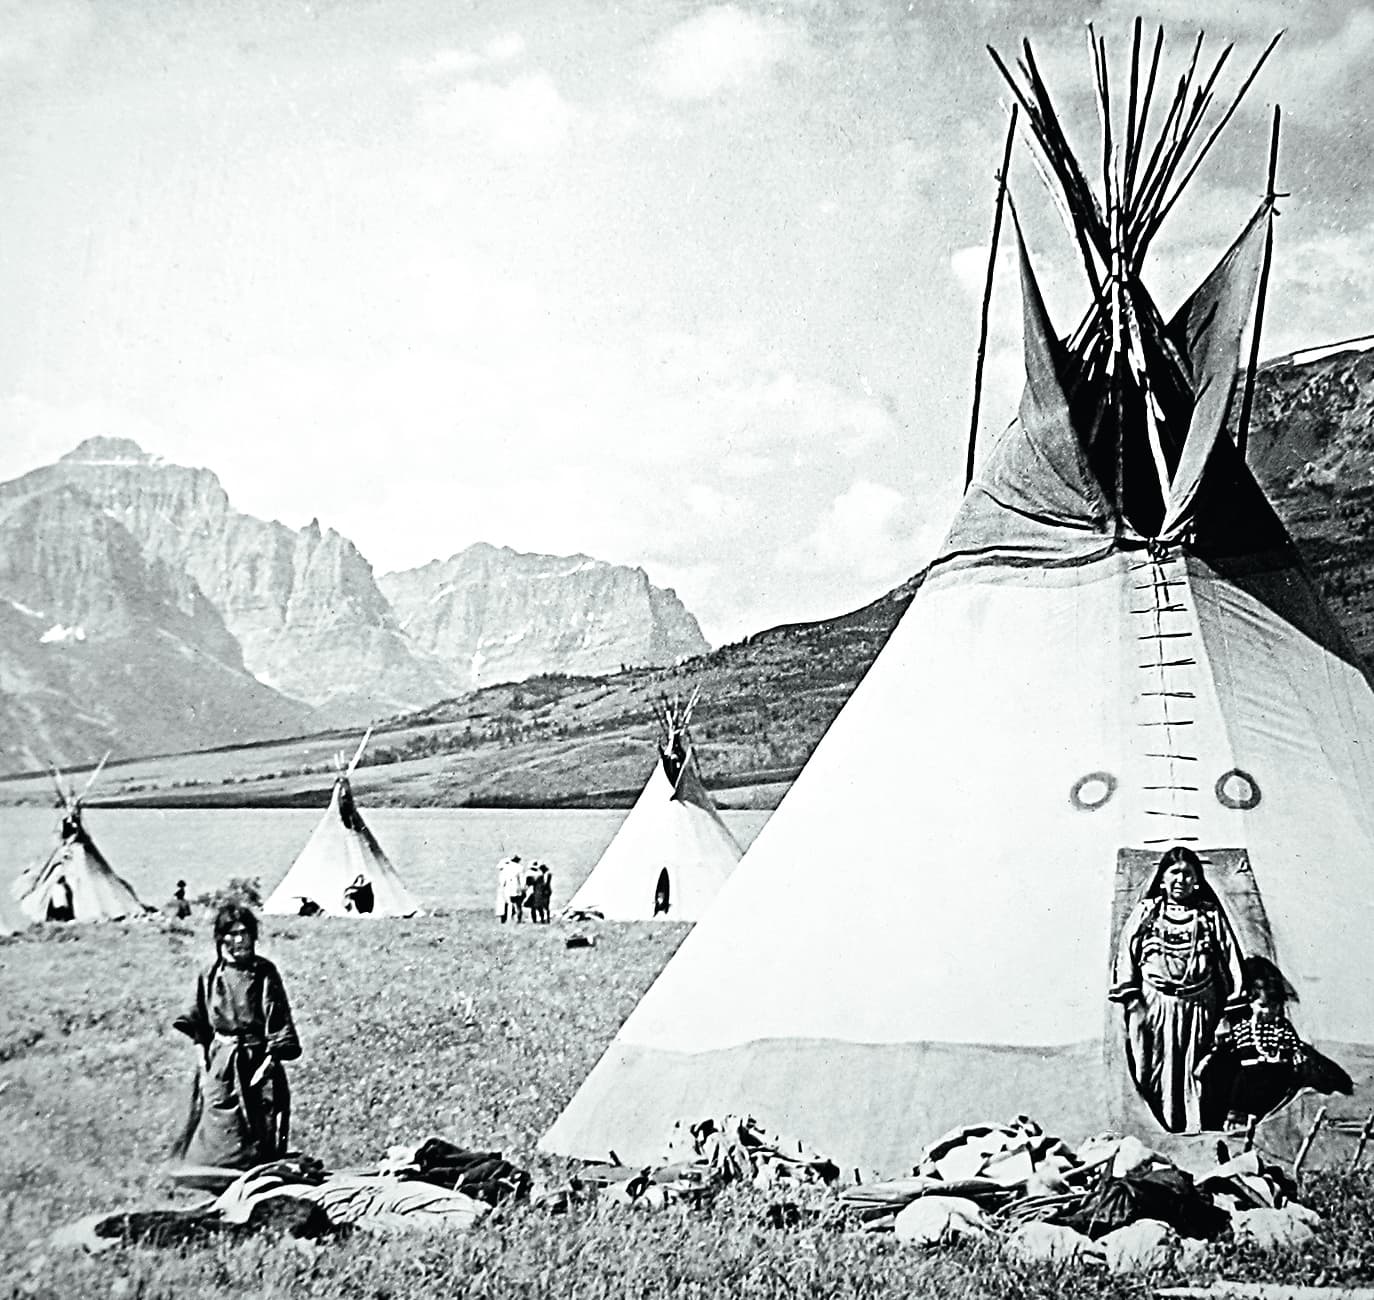 Blackfeet Lodges